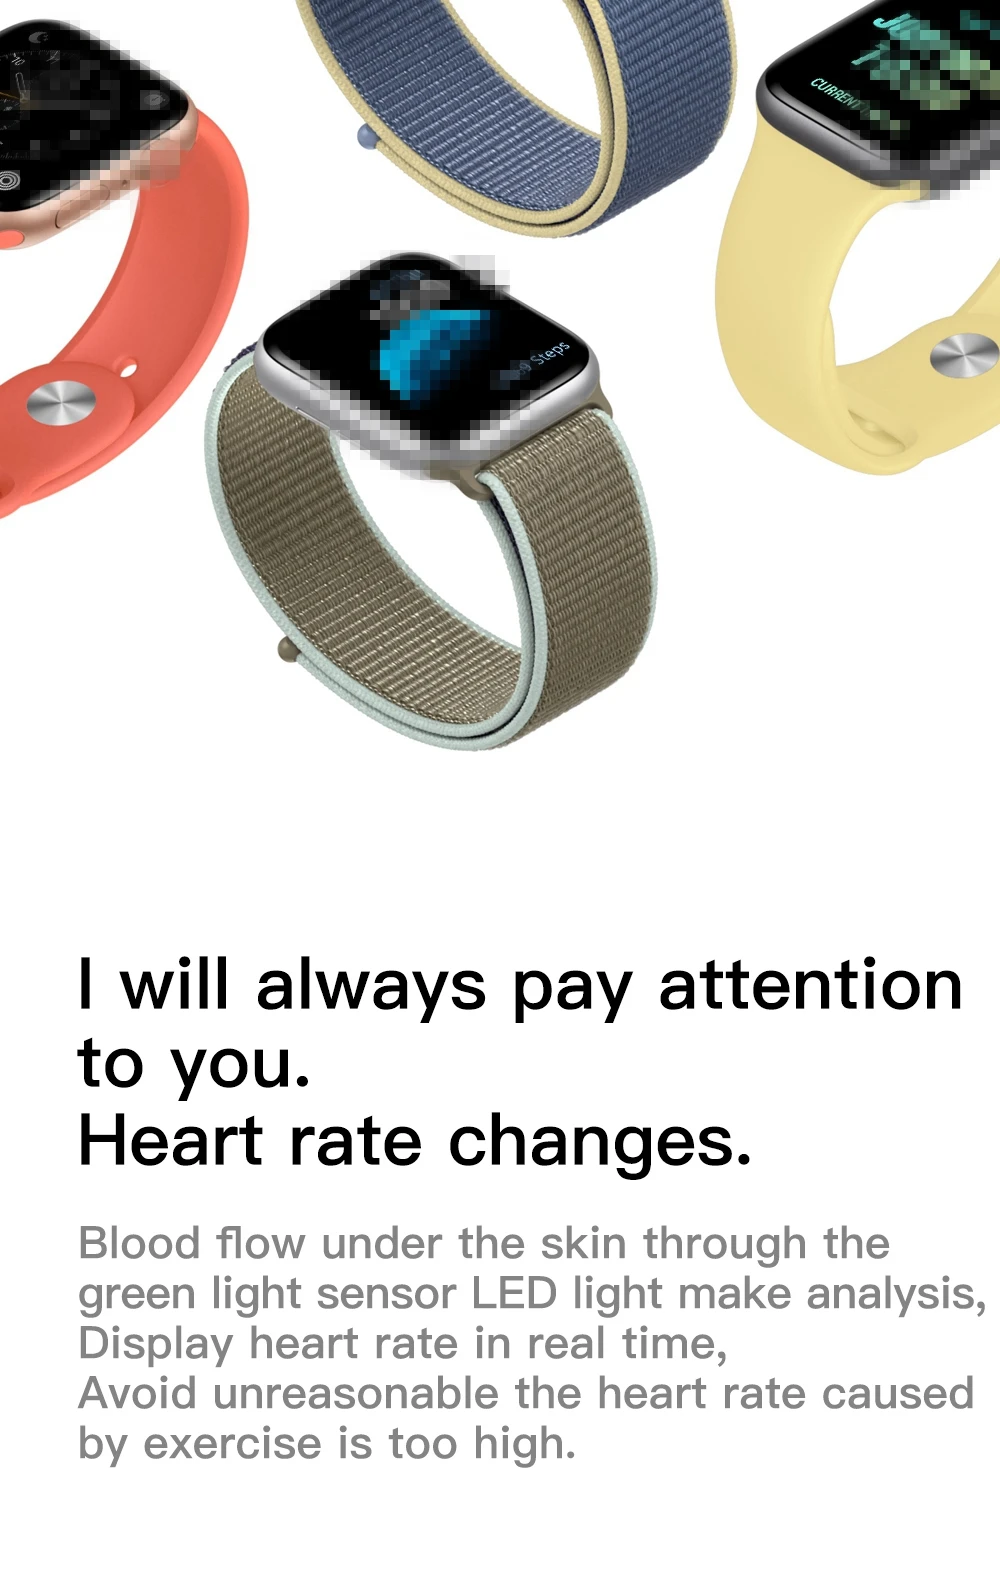 Часы 5 IWO 12 Pro Bluetooth Смарт часы 1:1 Смарт часы 44 мм чехол для Apple IOS Android телефон Smartwatch ЭКГ монитор сердечного ритма